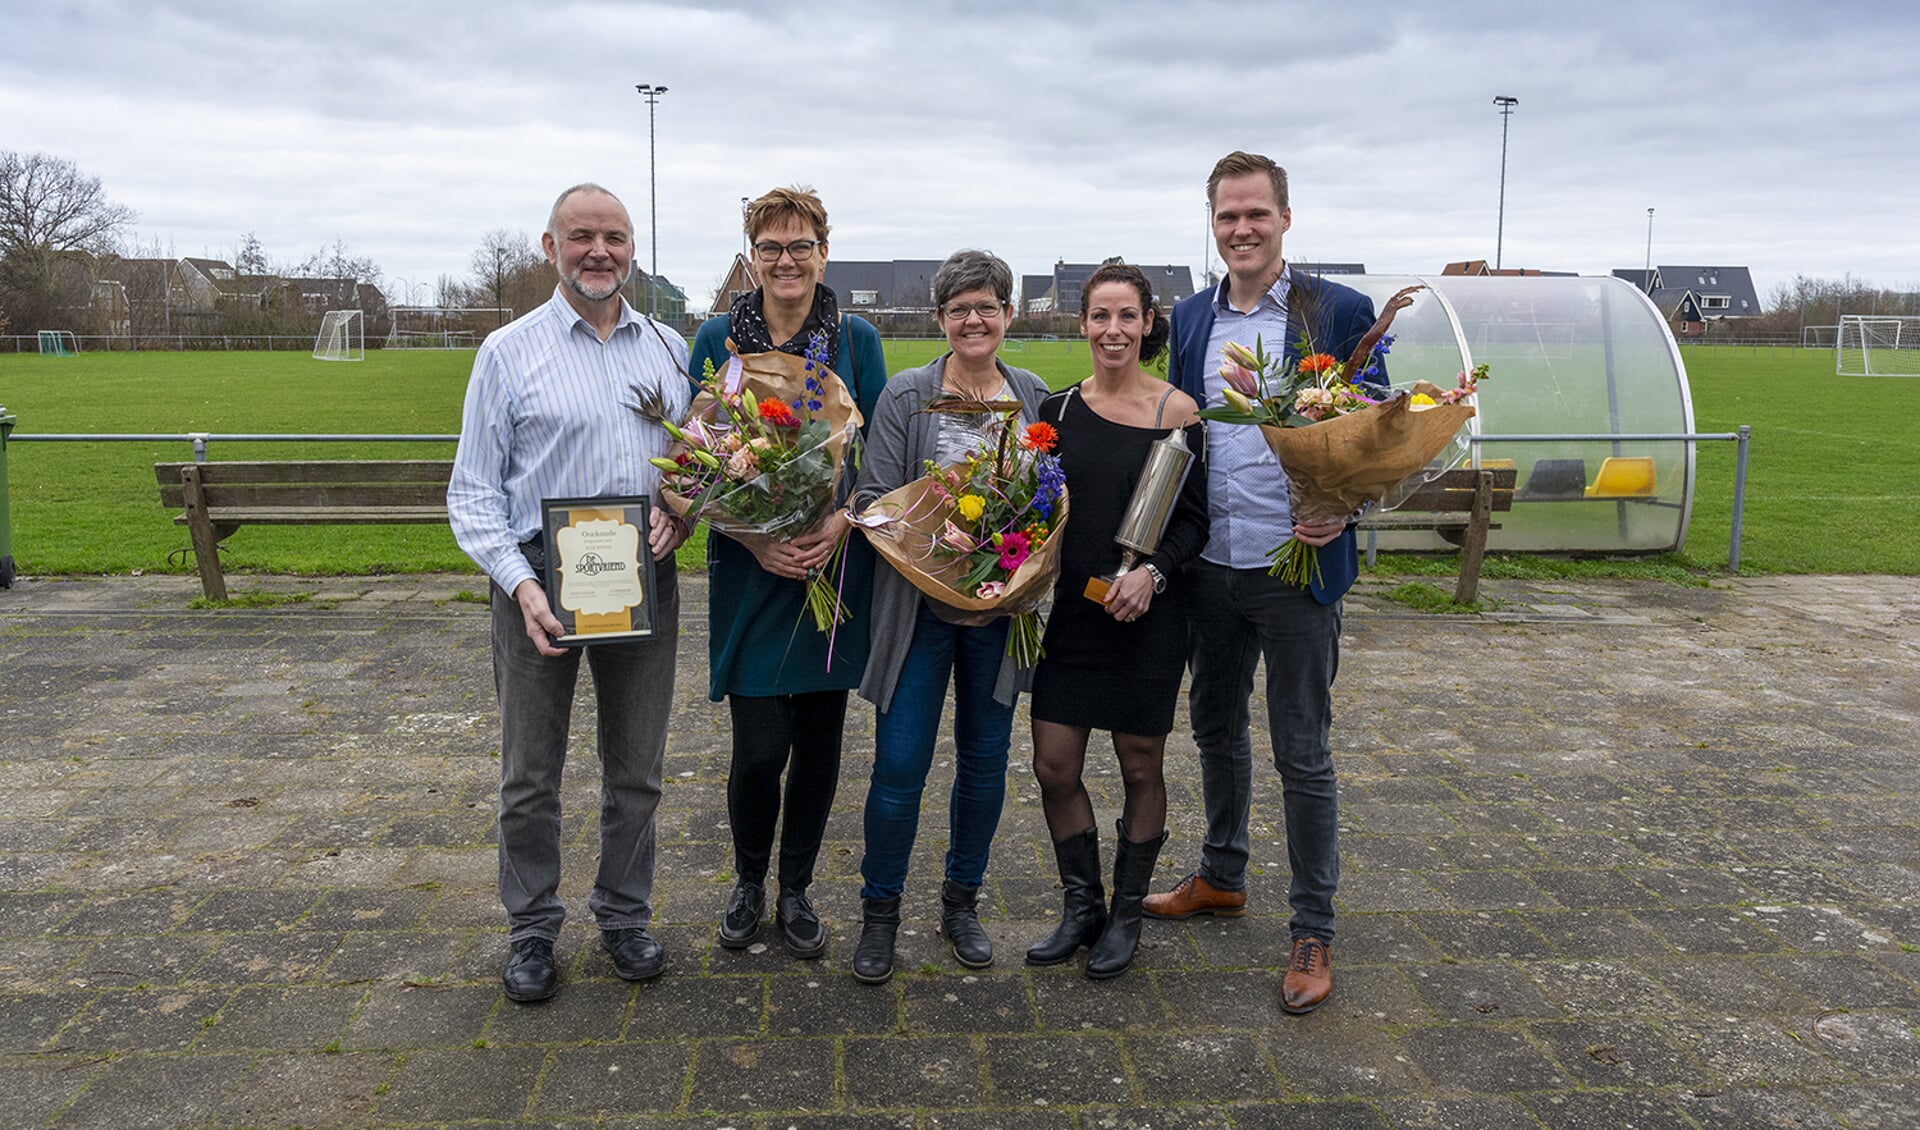 Prijzen sportverkiezing 't Zand 2019 uitgereikt.